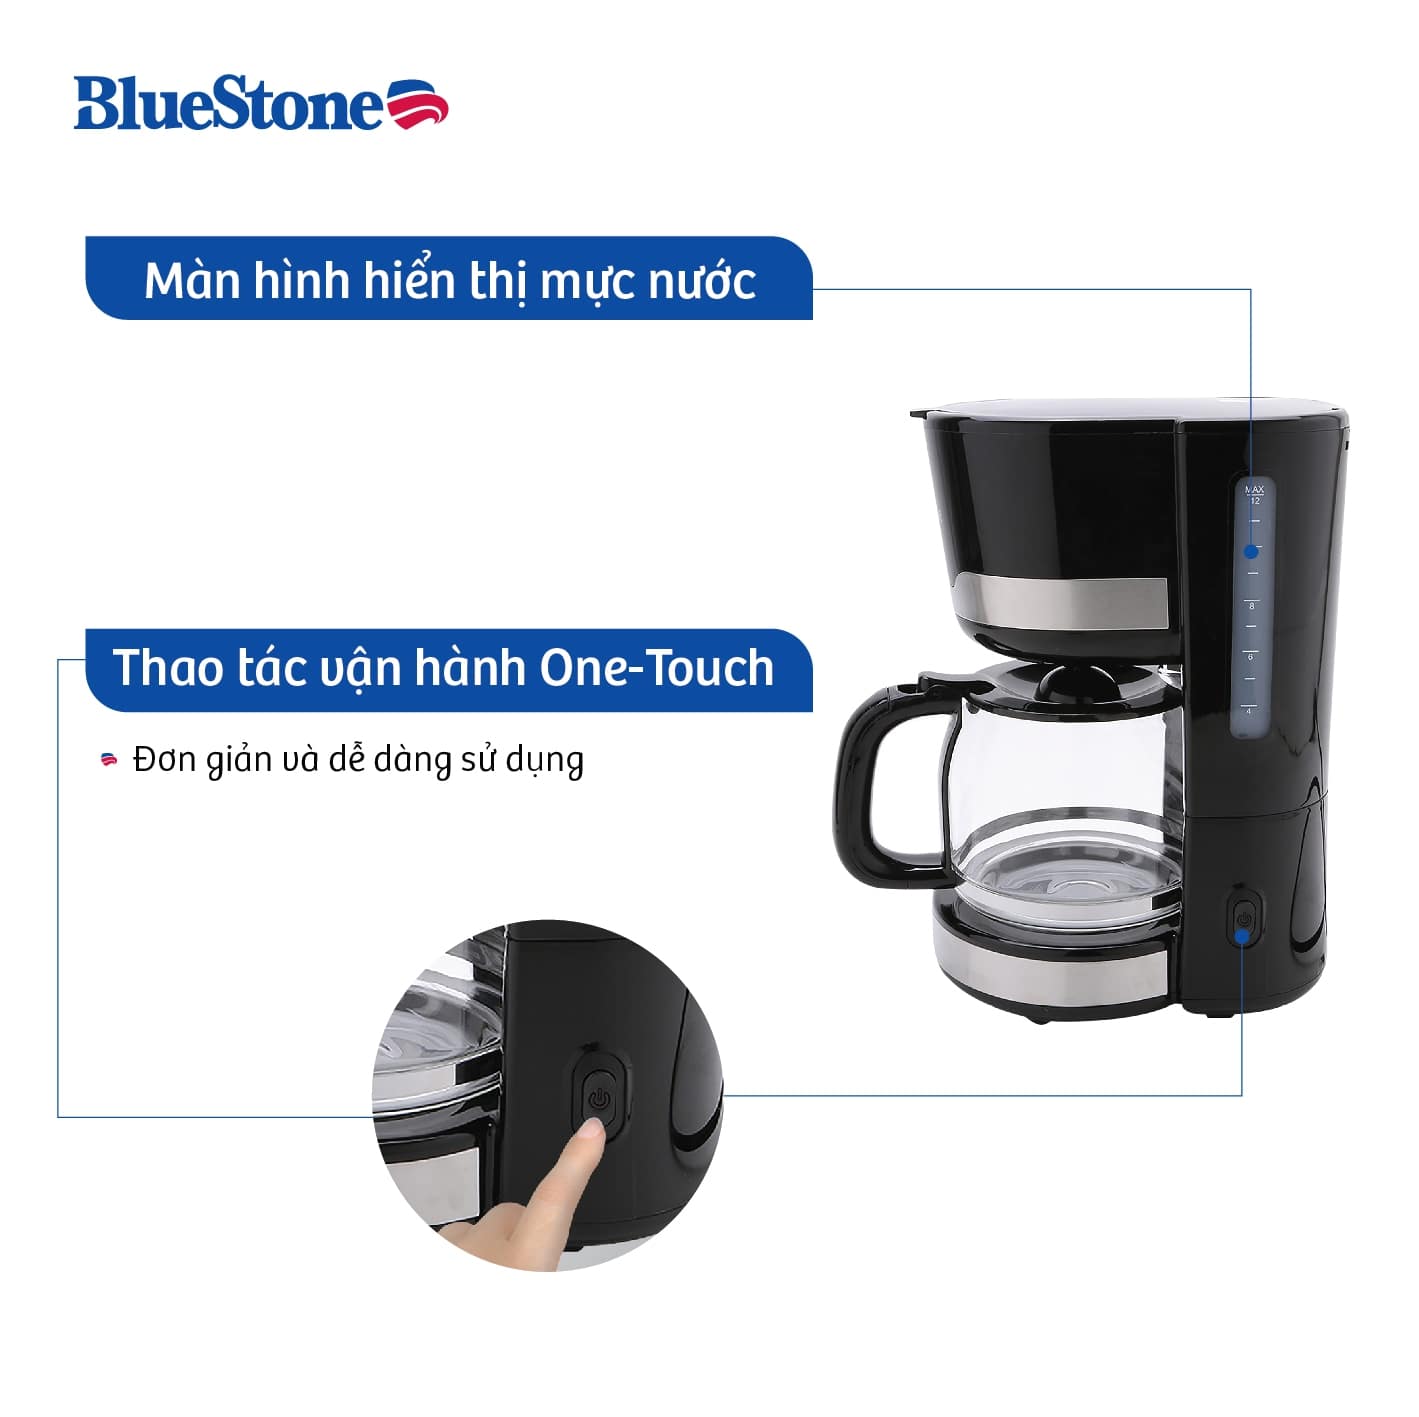 Máy pha cà phê BlueStone với nhiều ưu điểm nổi bật 